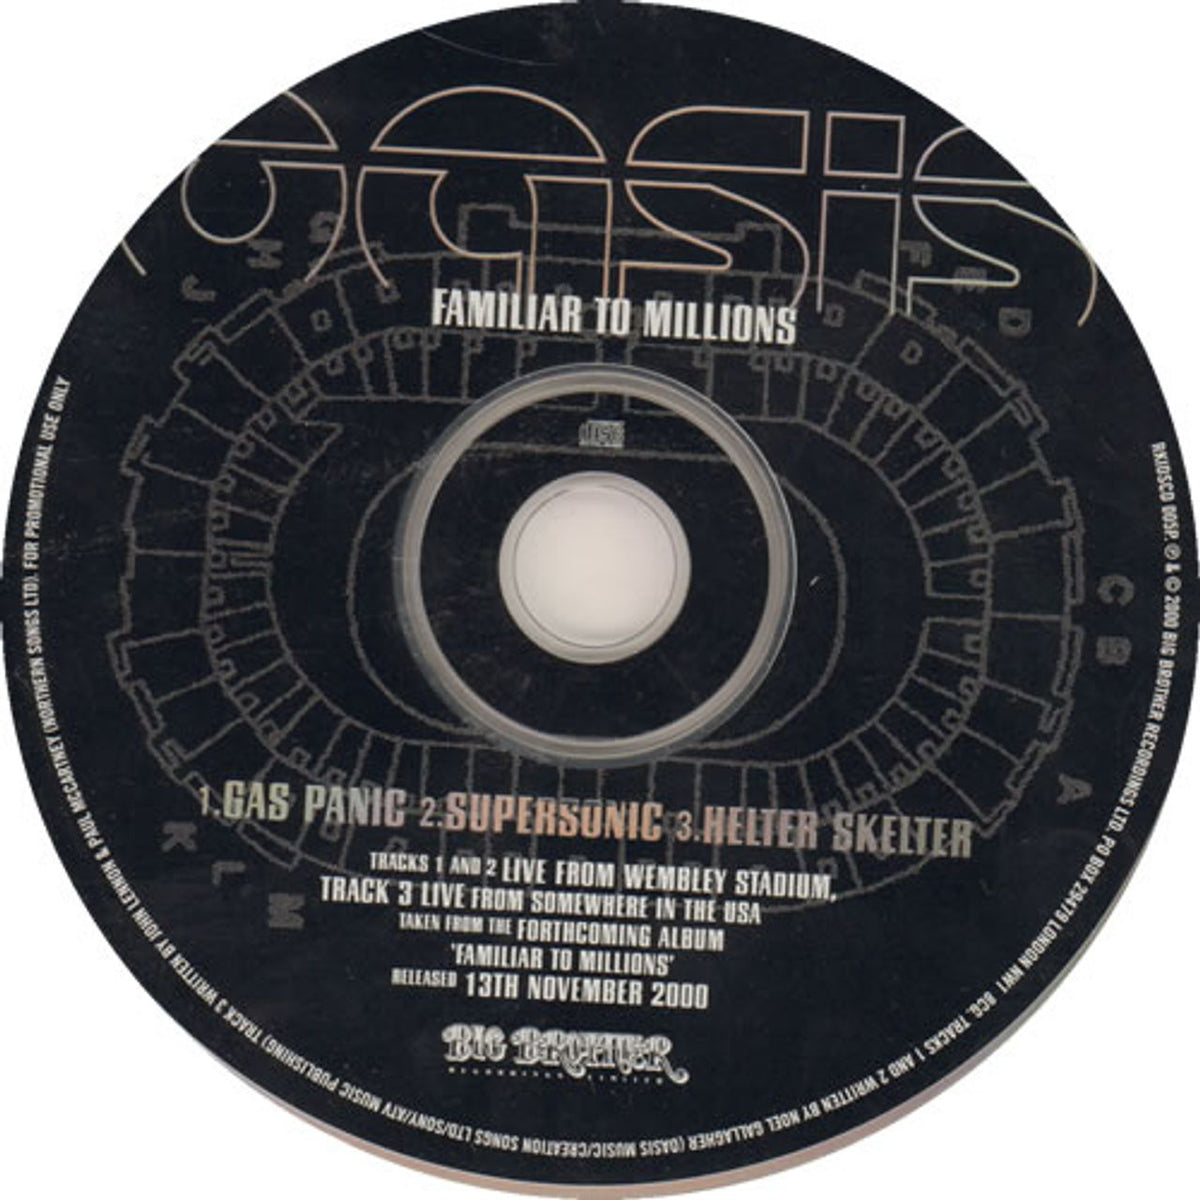 Oasis Familiar To Millions 2LP レコード オアシス - 洋楽